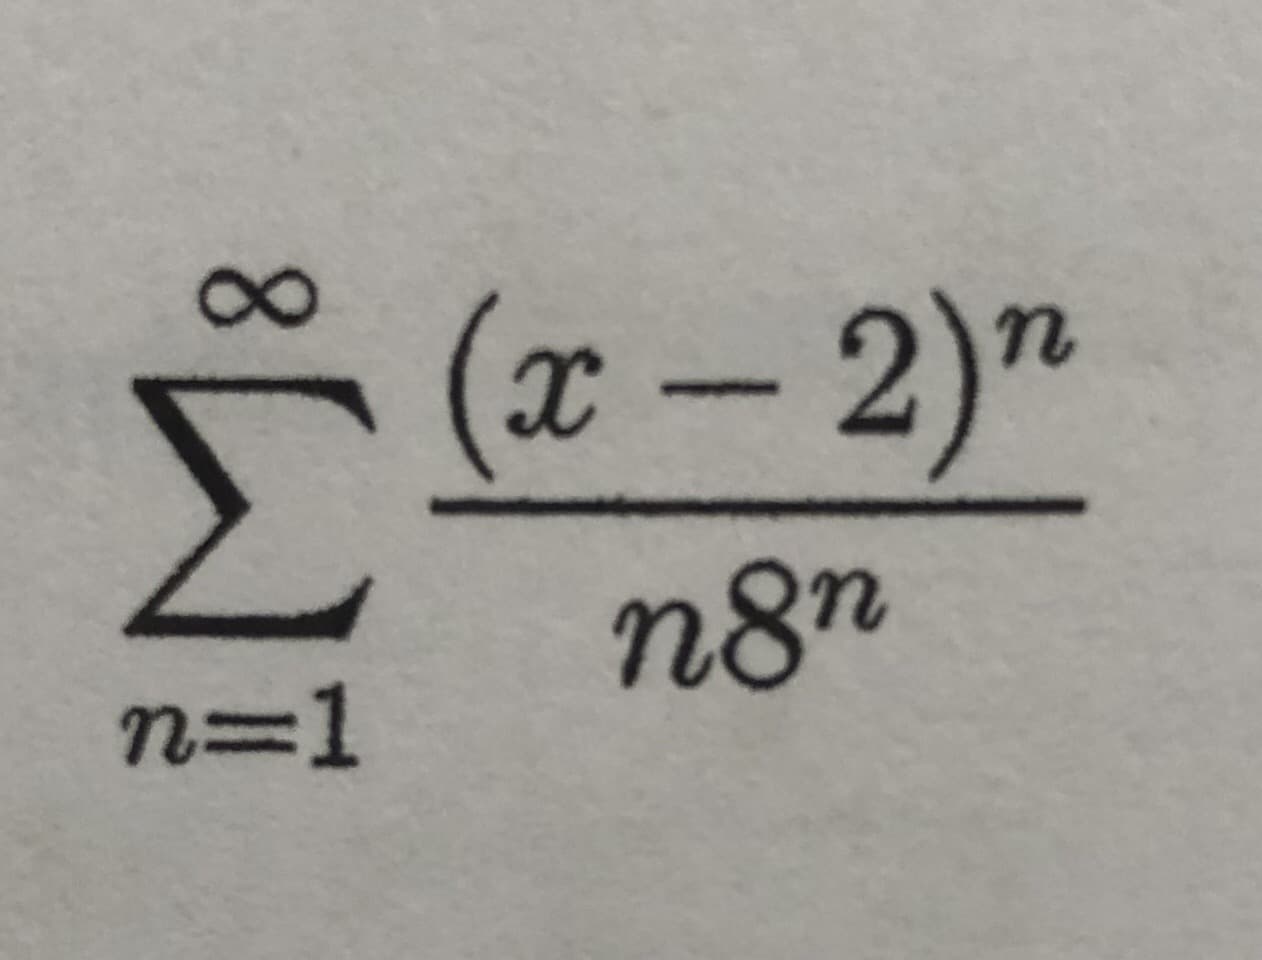 8.
(x-2)"
n8n
n=1
